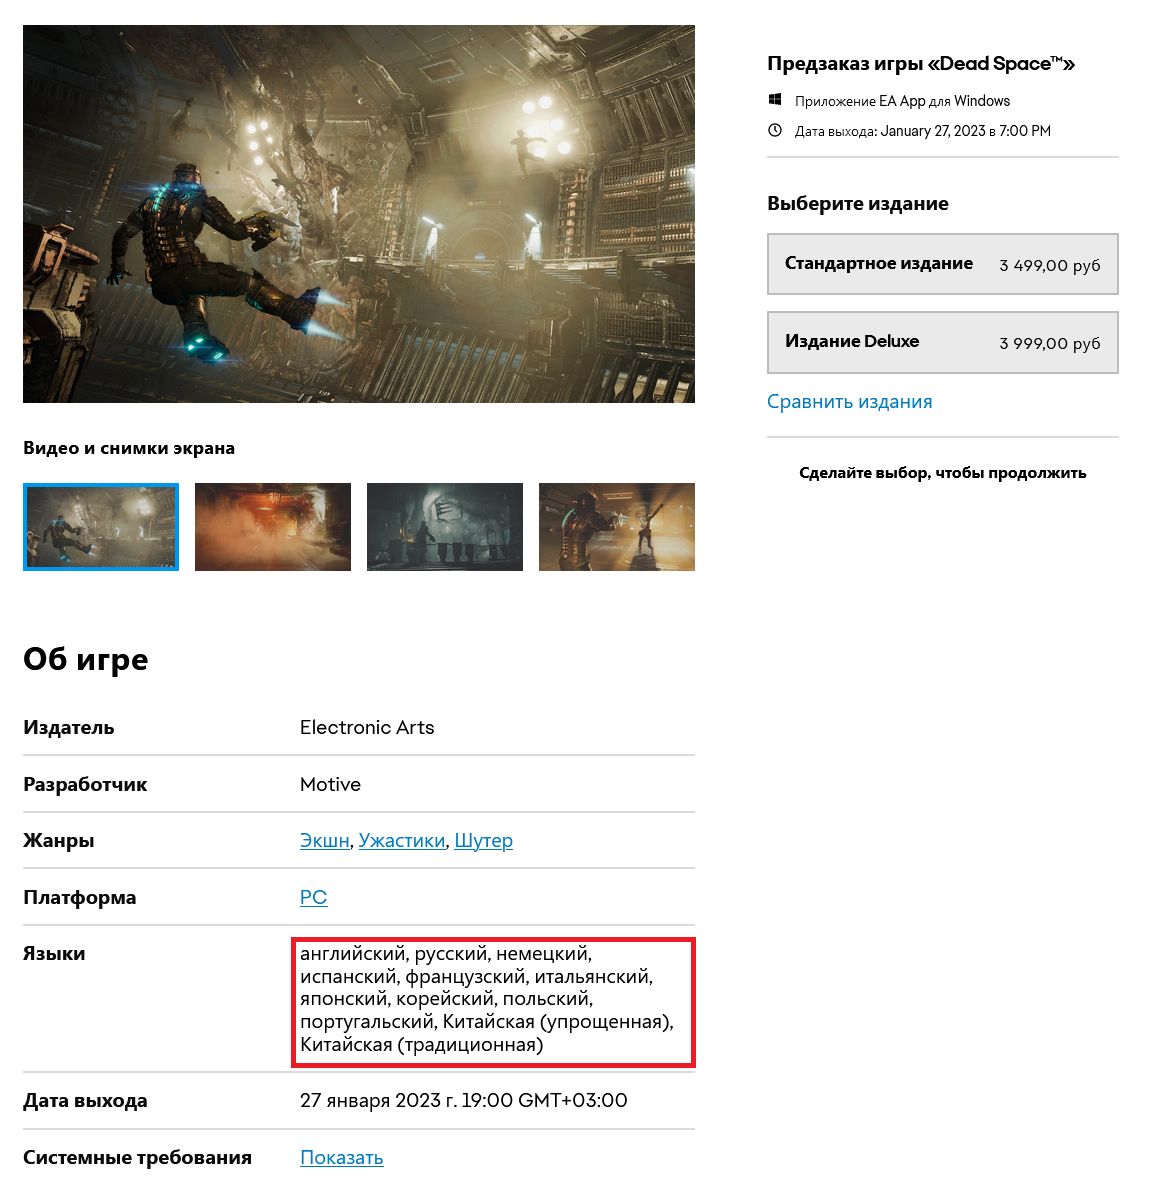 Скриншот от 12 октября 2022 года | Источник: GameMag.ru